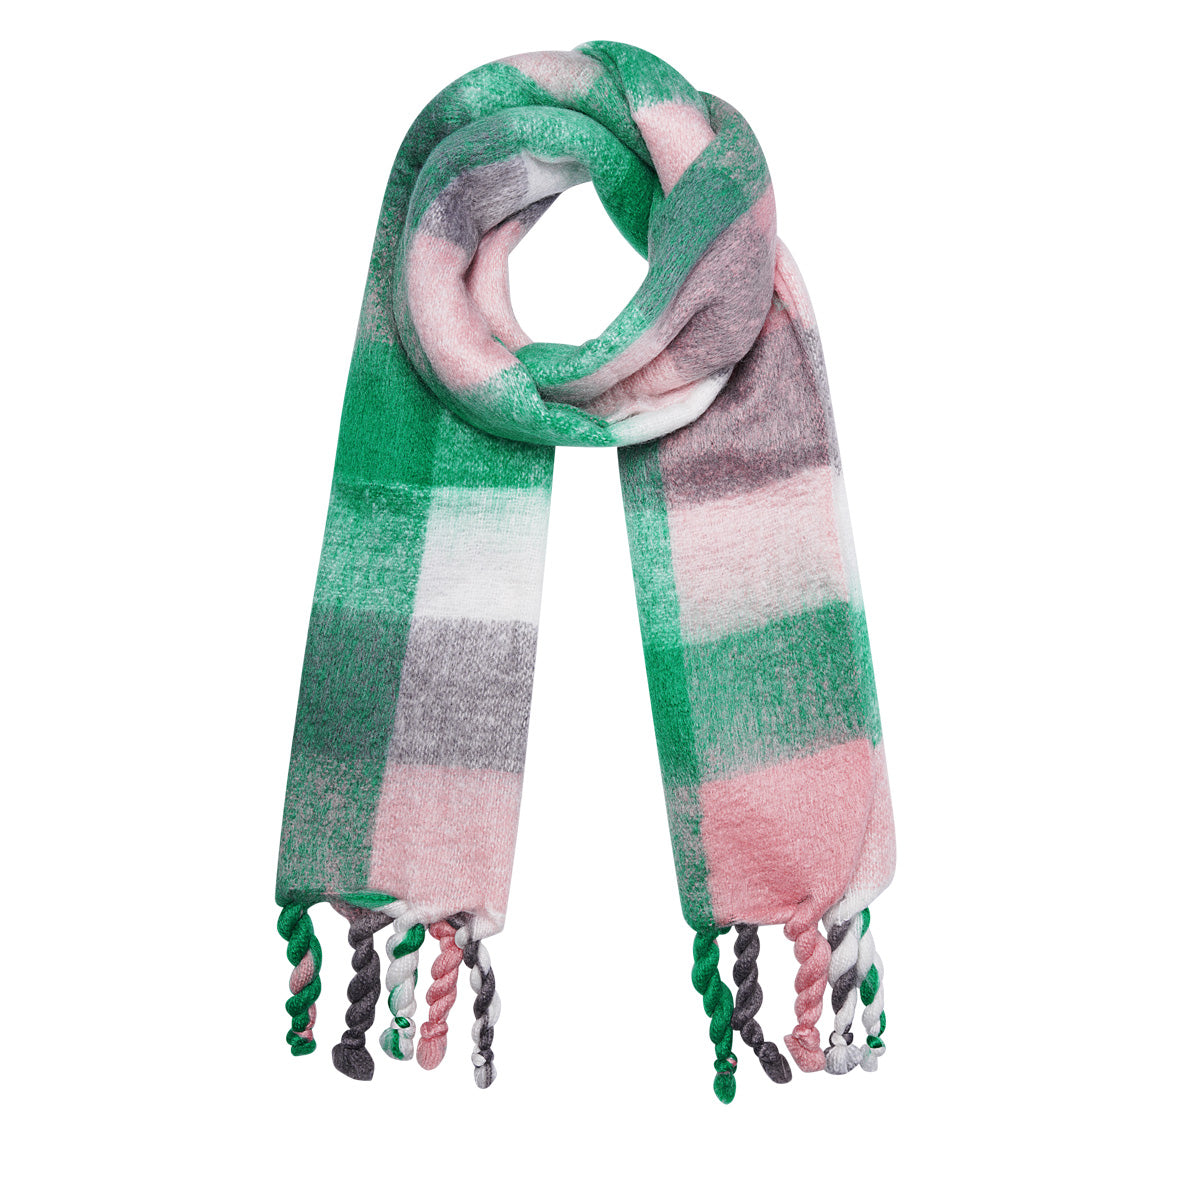 Kleurrijke wintersjaal geblokt roze-groen-wit-grijs